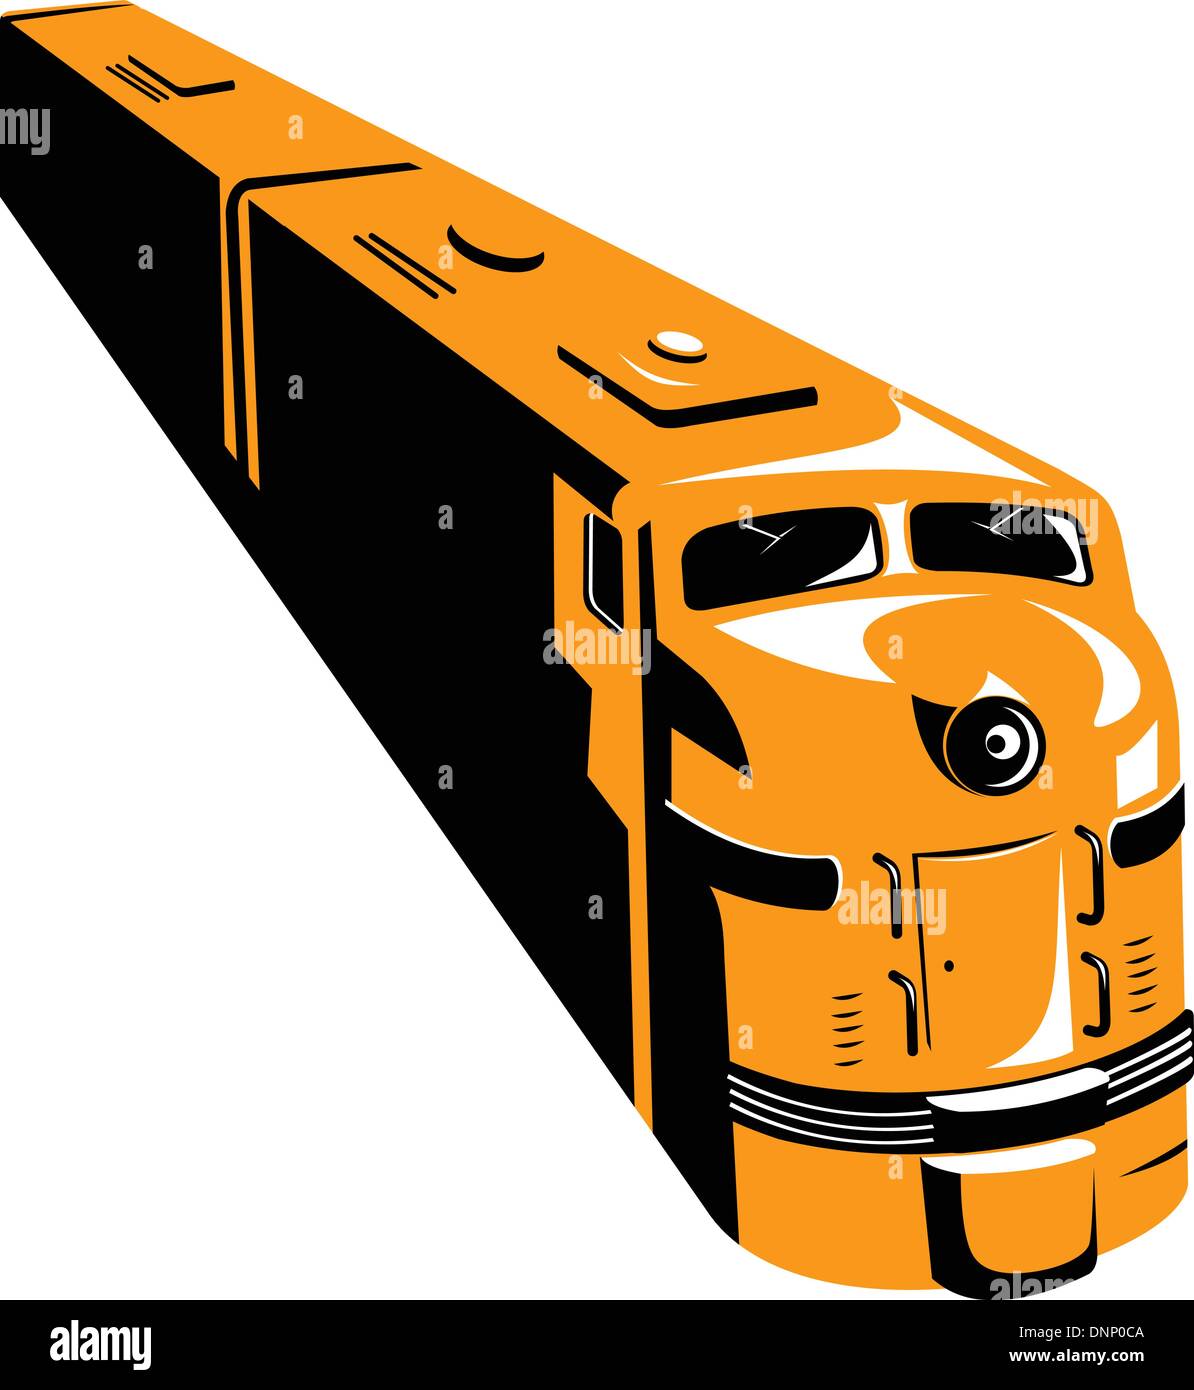 Illustrazione di un treno diesel visto da un angolo alto fatto in stile retrò isolato su sfondo bianco. Illustrazione Vettoriale